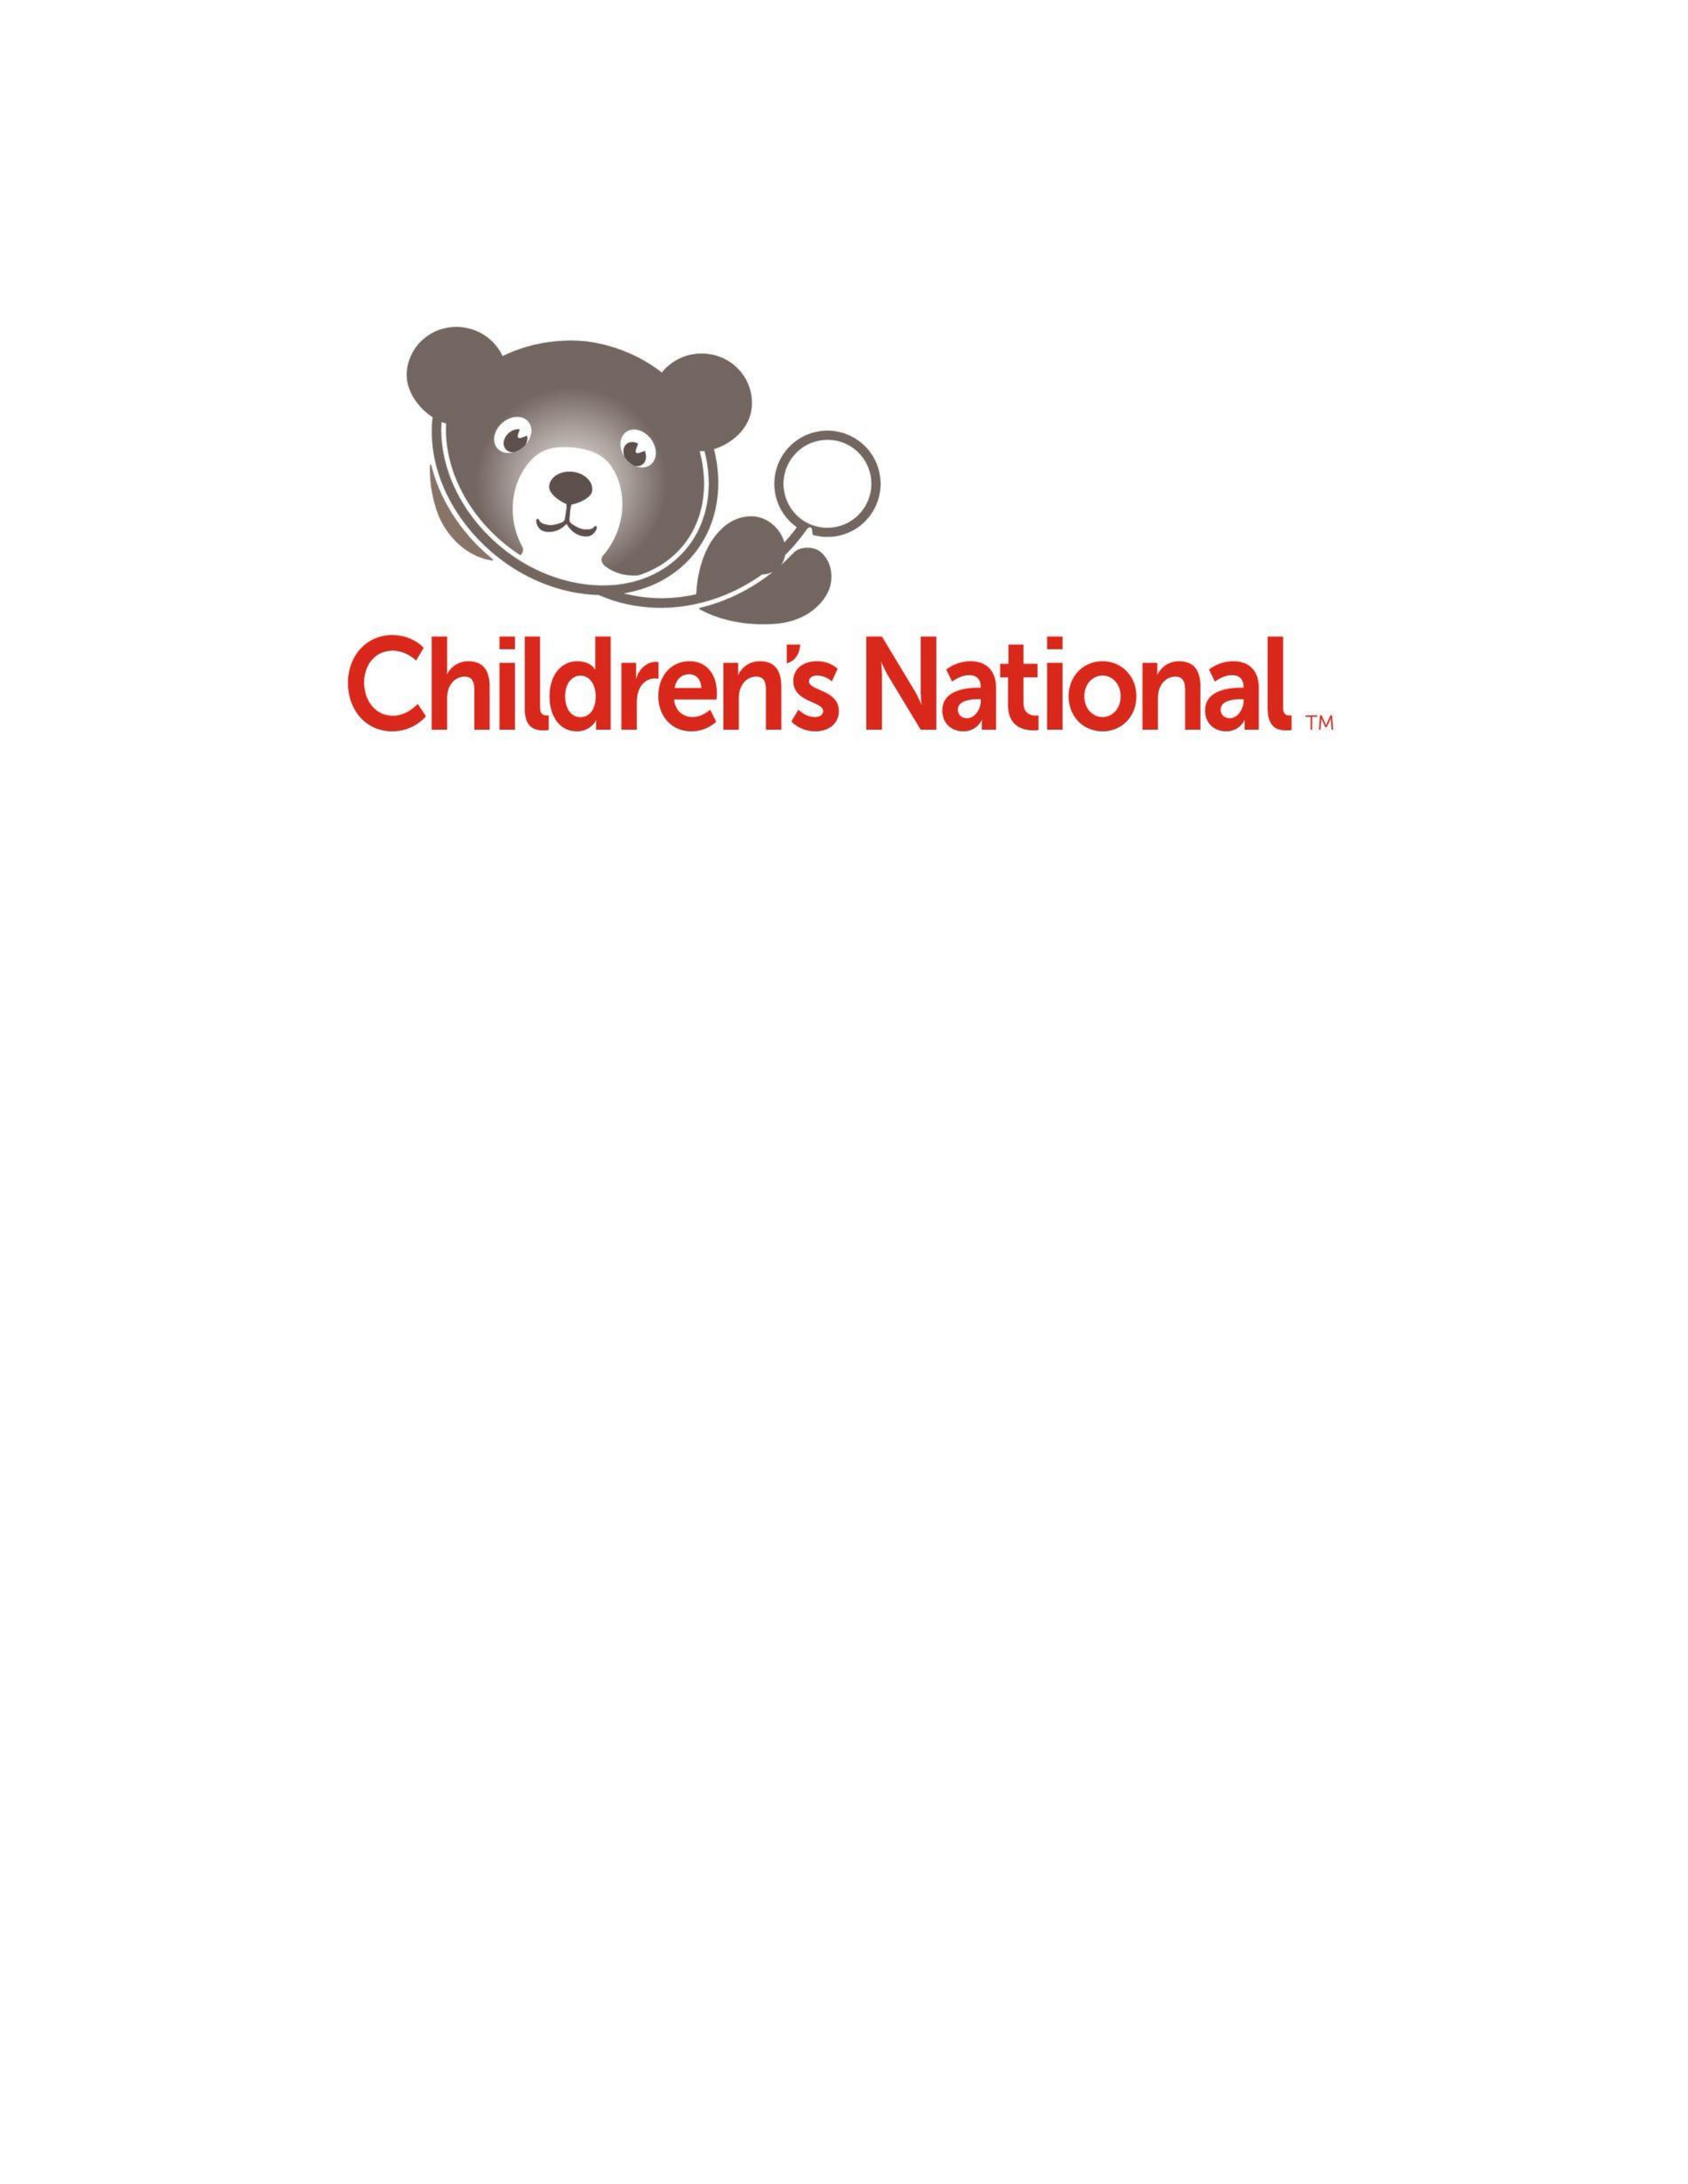 Children’s National Hospital